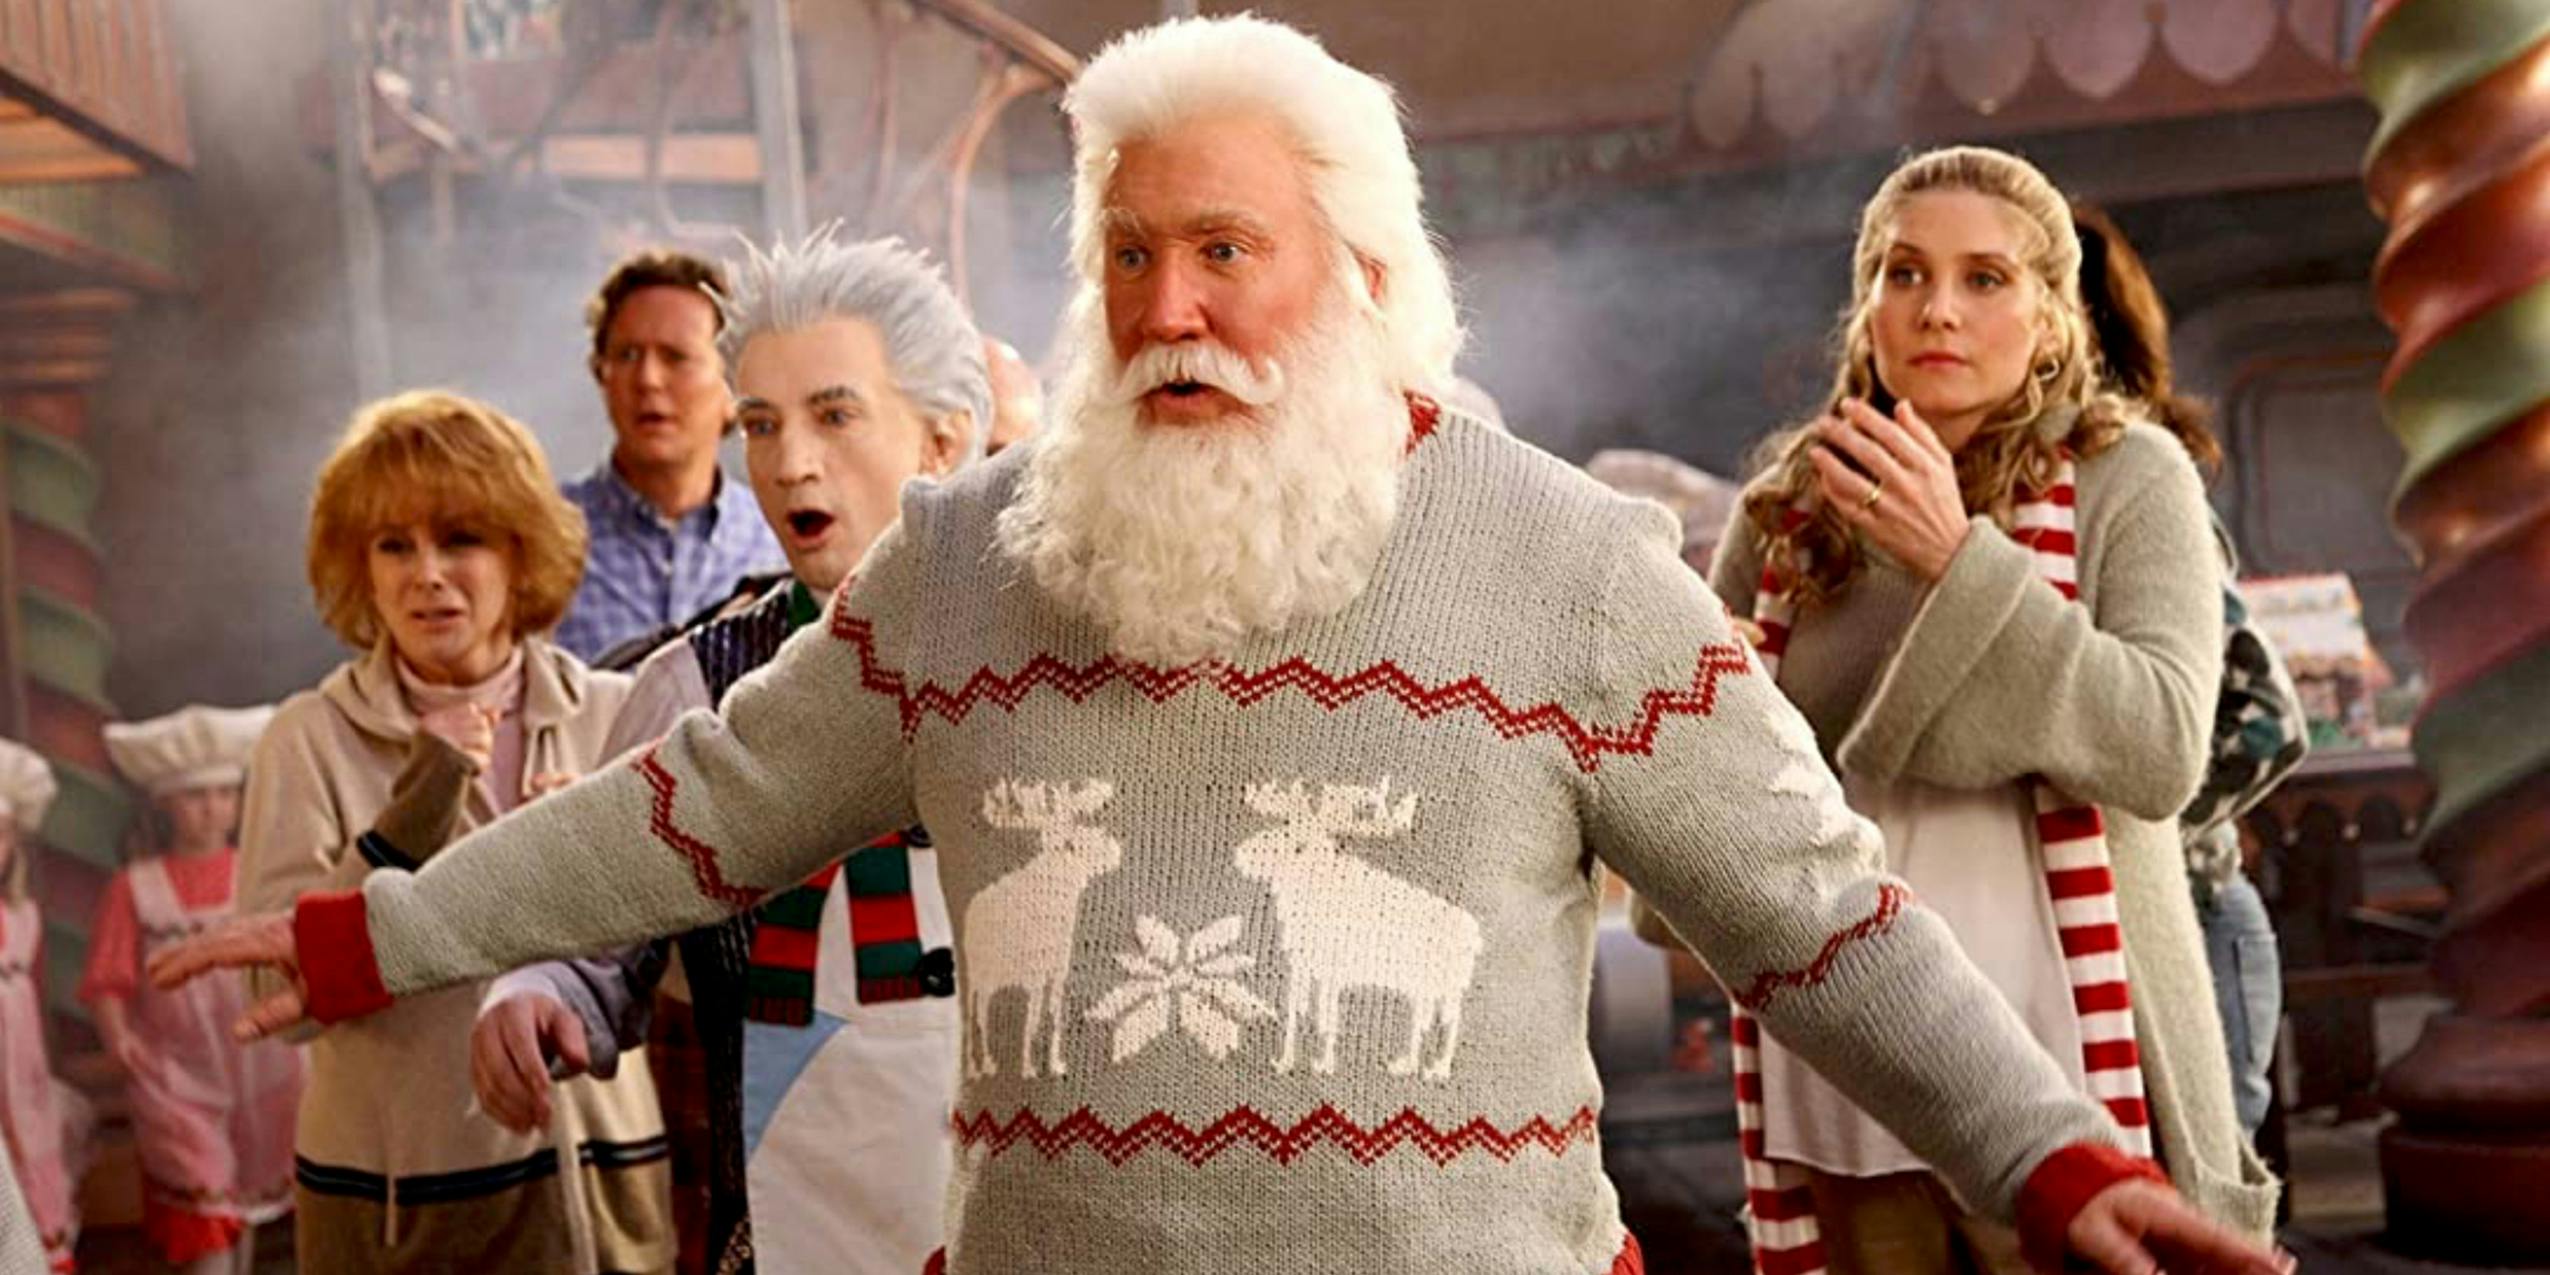 Tim Allen as Santa Claus in the Santa Clause 3.